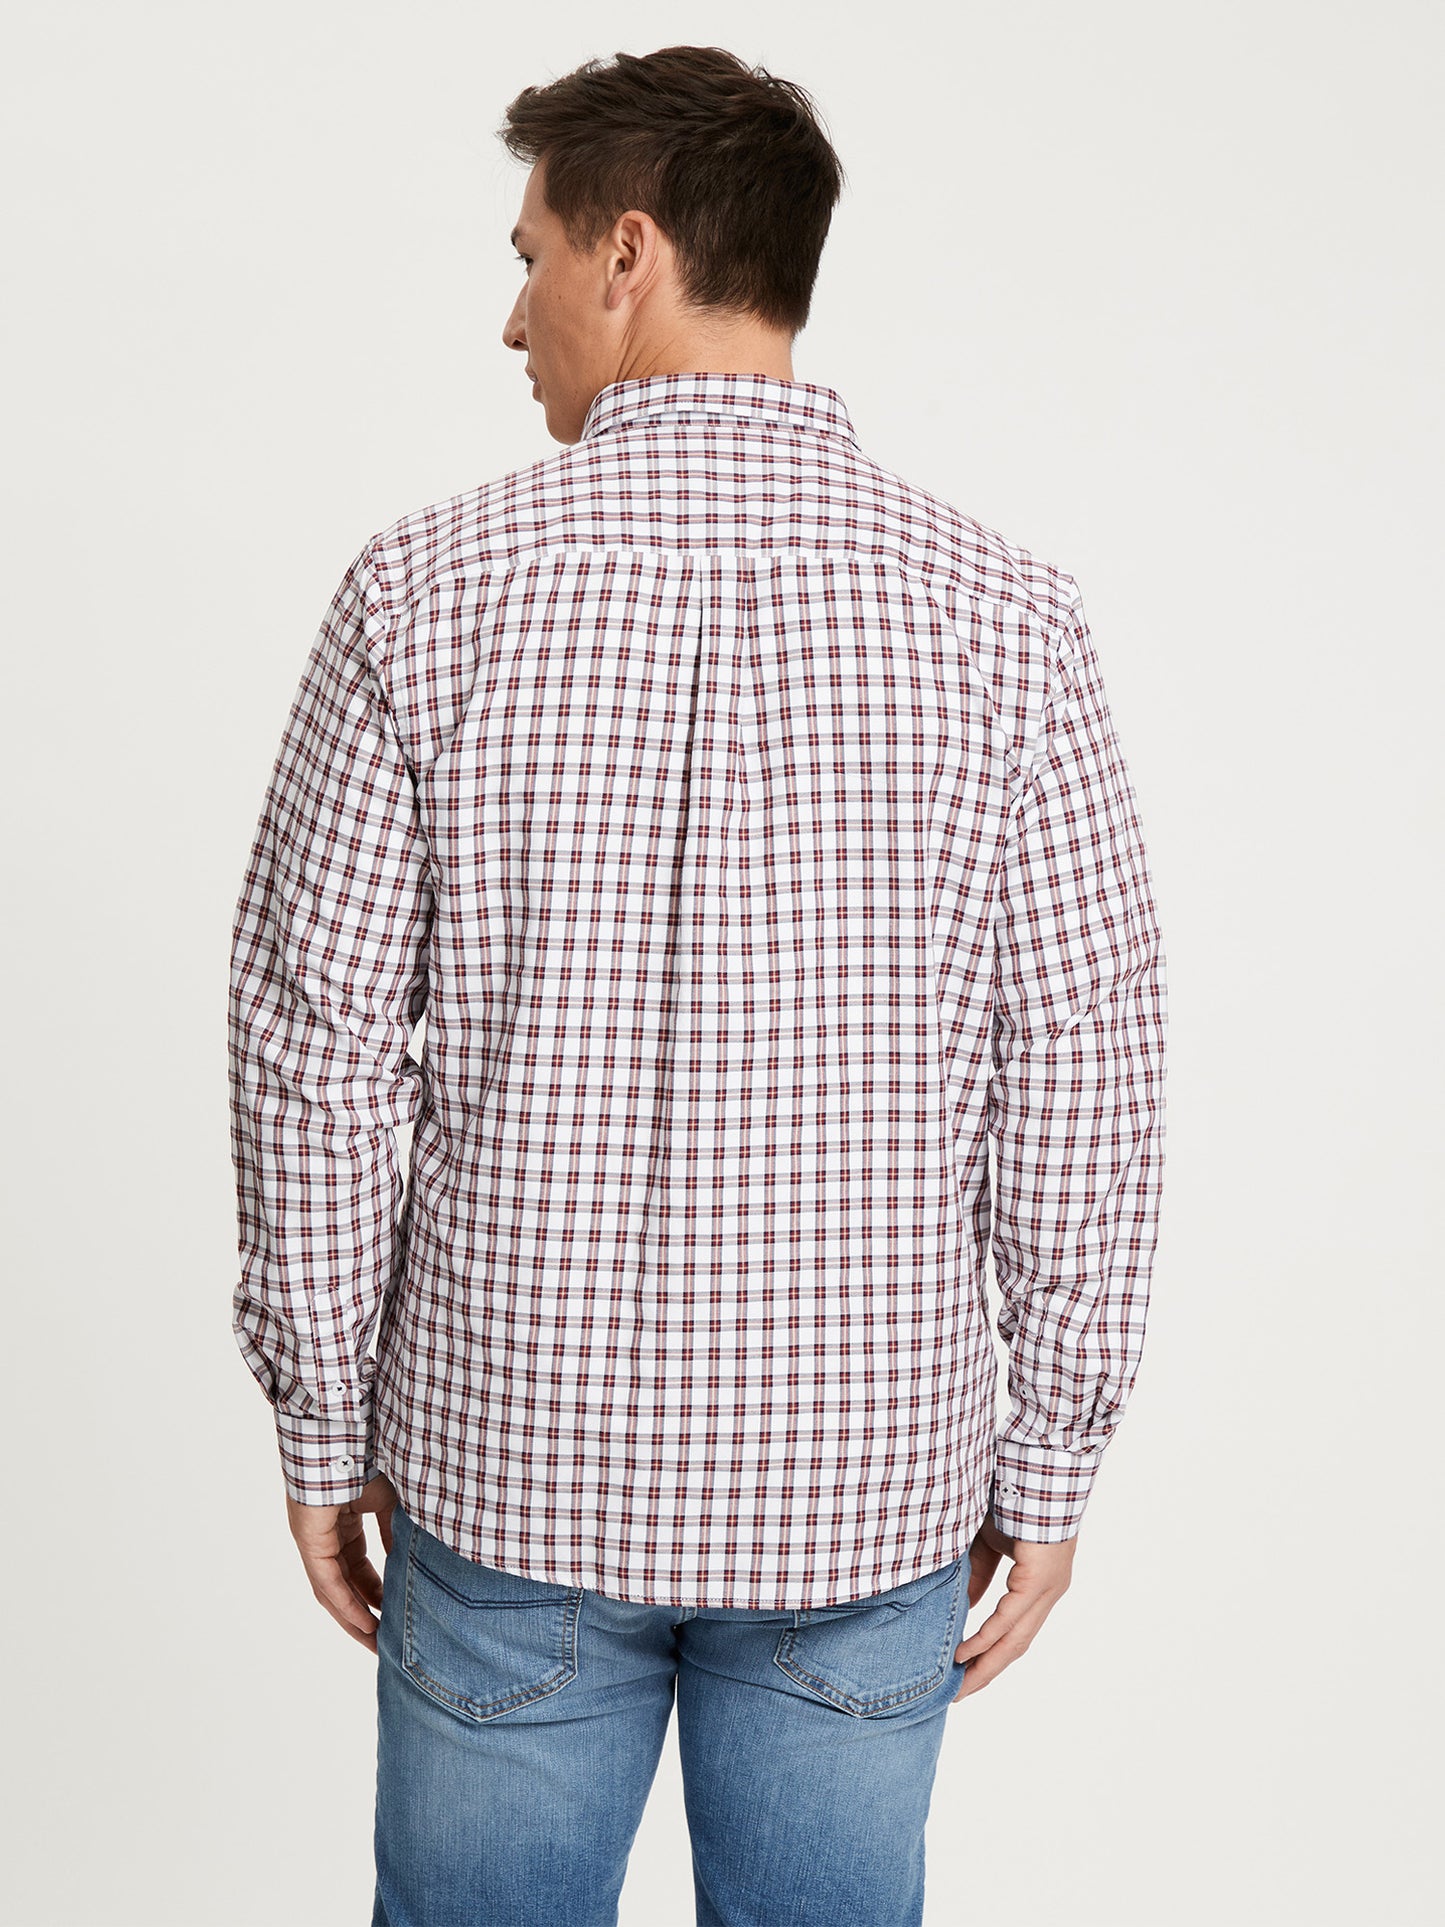 Men's regular long-sleeved shirt checked dark red.